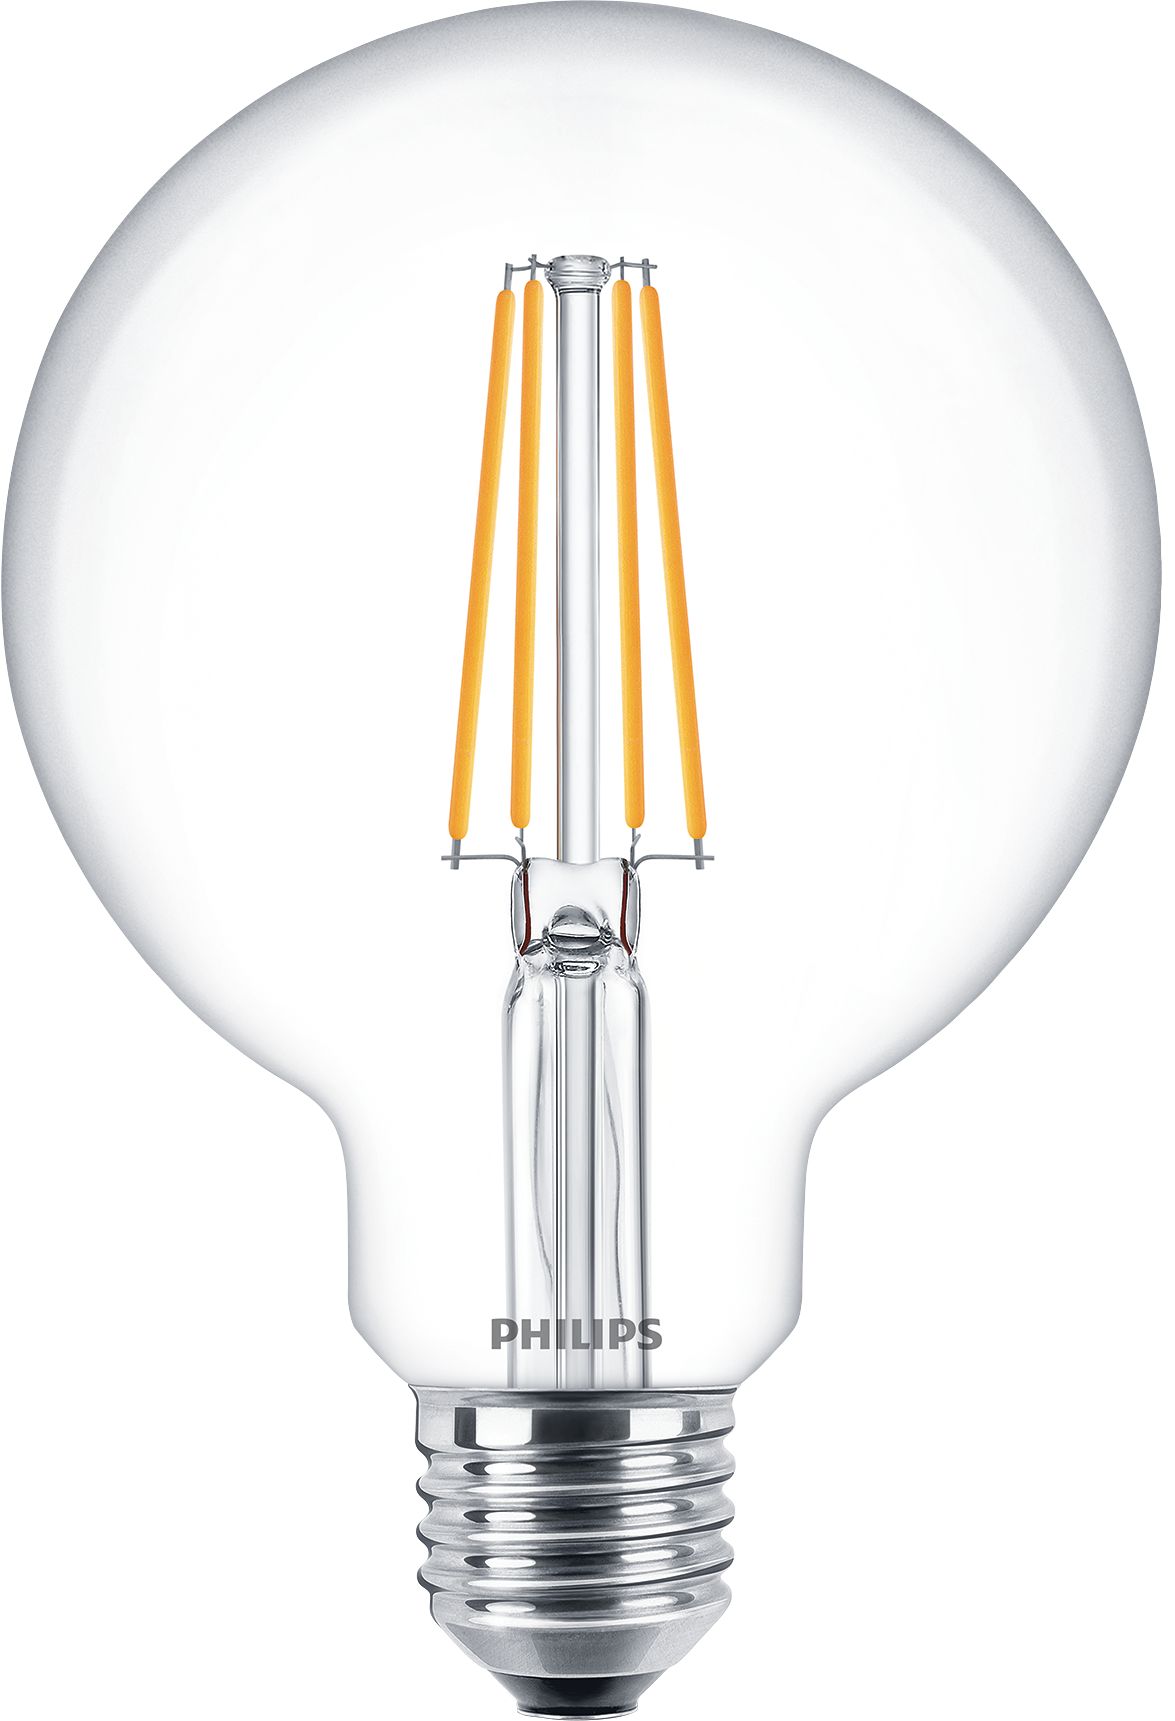 ansøge klo kommentar Classic filament LEDbulbs | LEDFILAM | Philips lighting